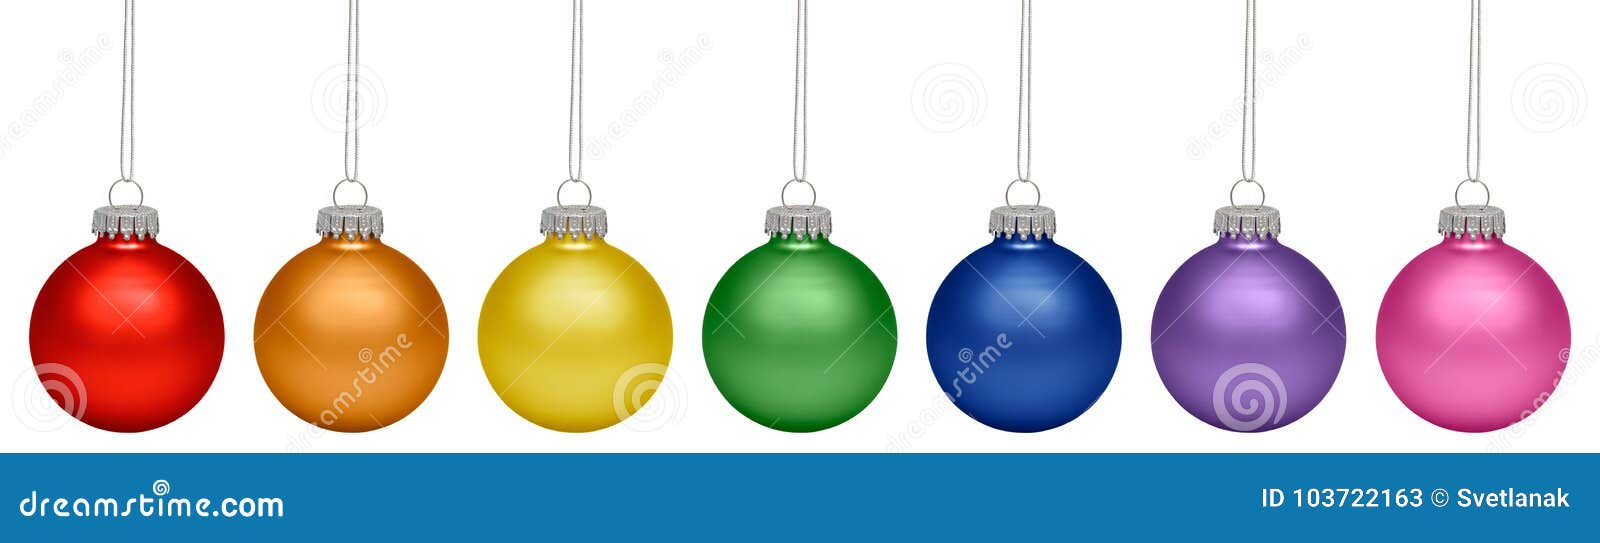 Quinquilharias Do Natal Todas As Cores Do Arco-íris Isolado No Branco  Imagem de Stock - Imagem de brilhante, isolado: 103722163